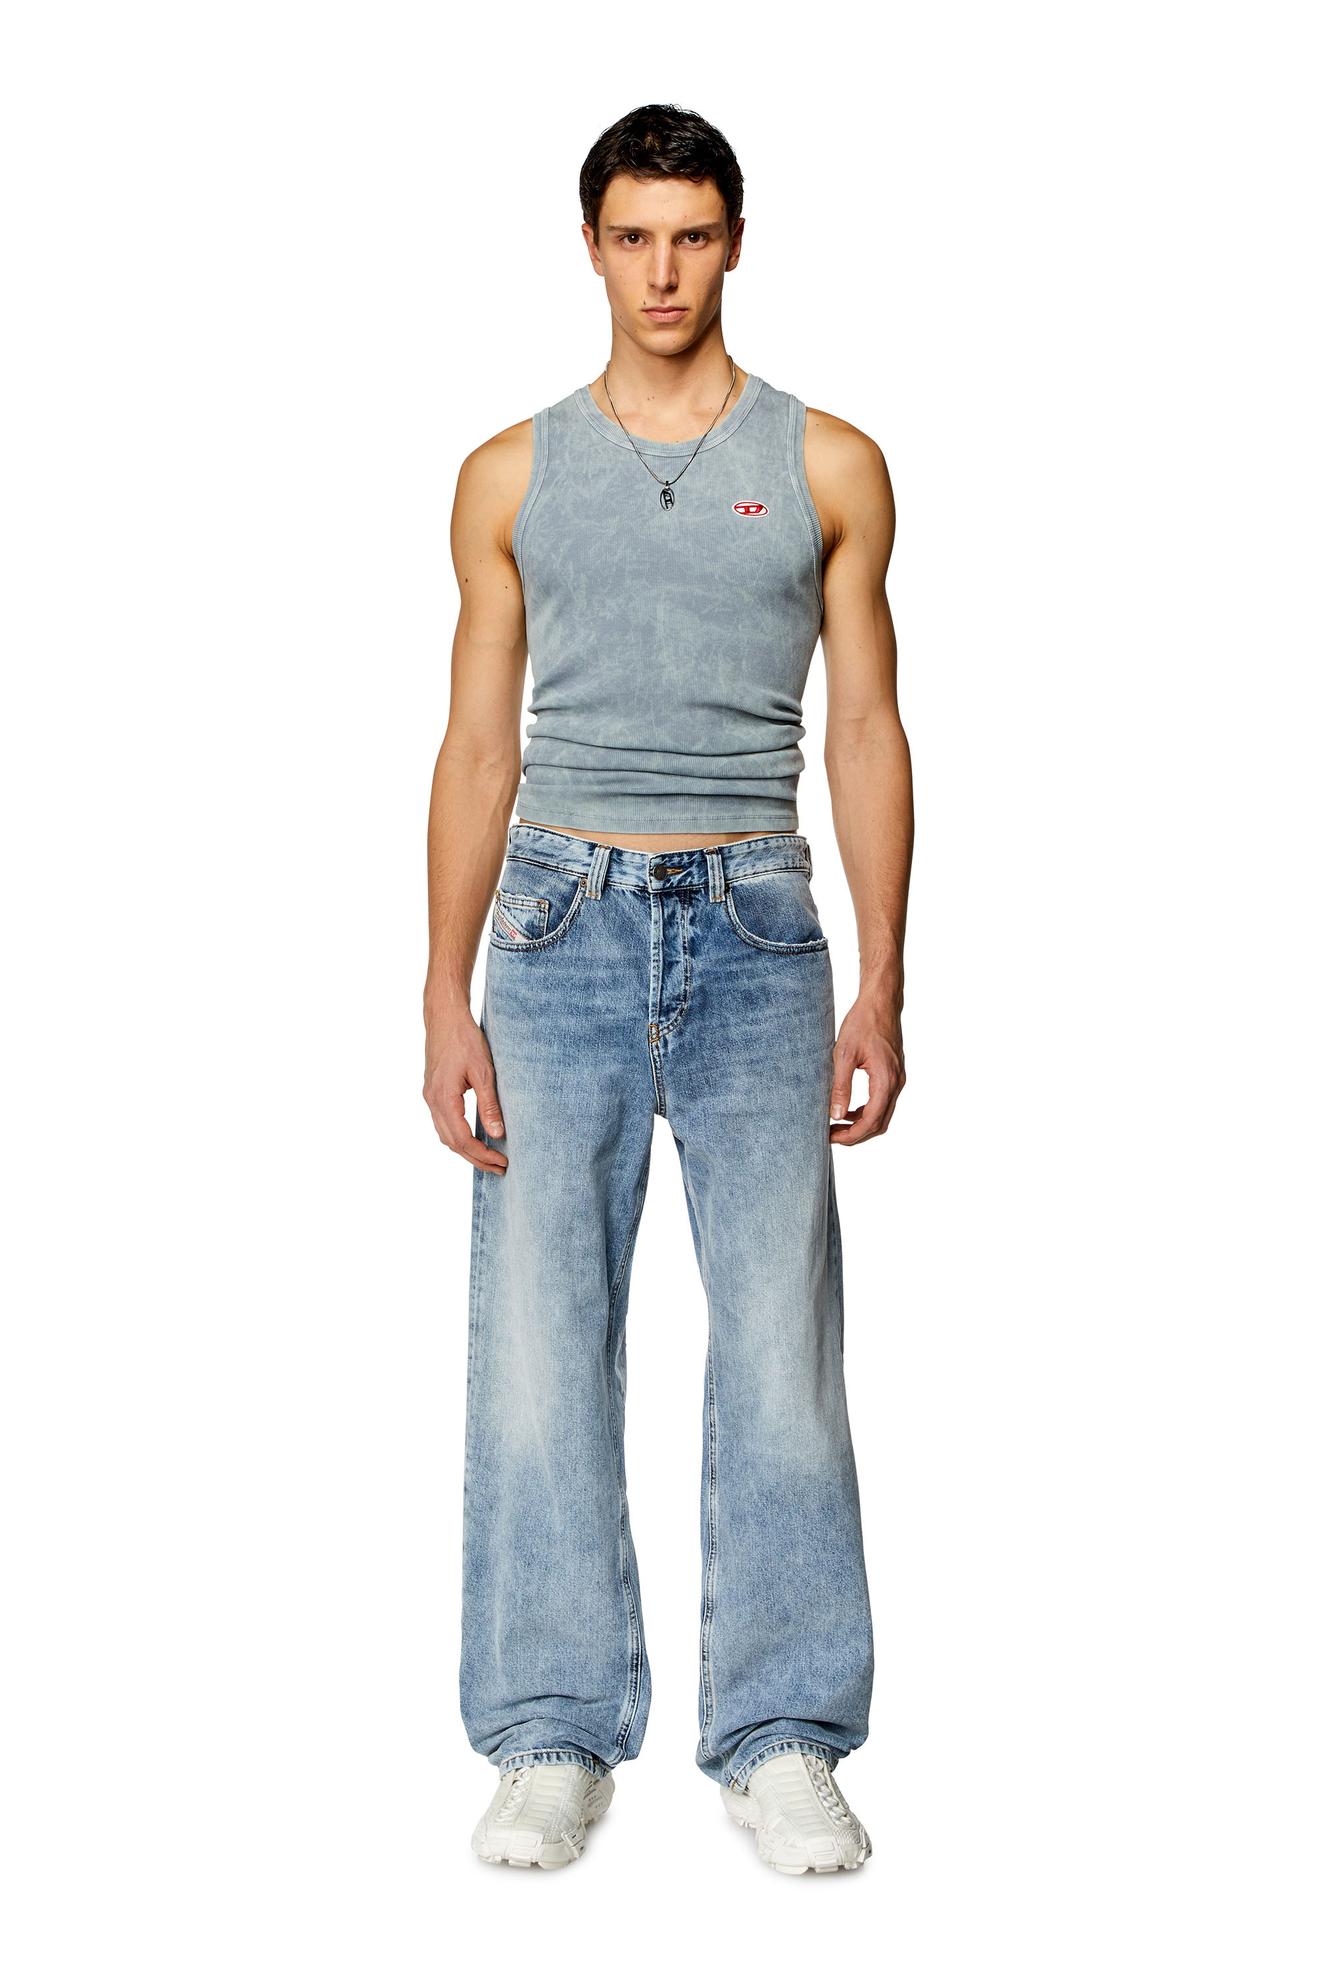 Προσφορά Straight Jeans - 2001 D-Macro για 231€ σε DIESEL